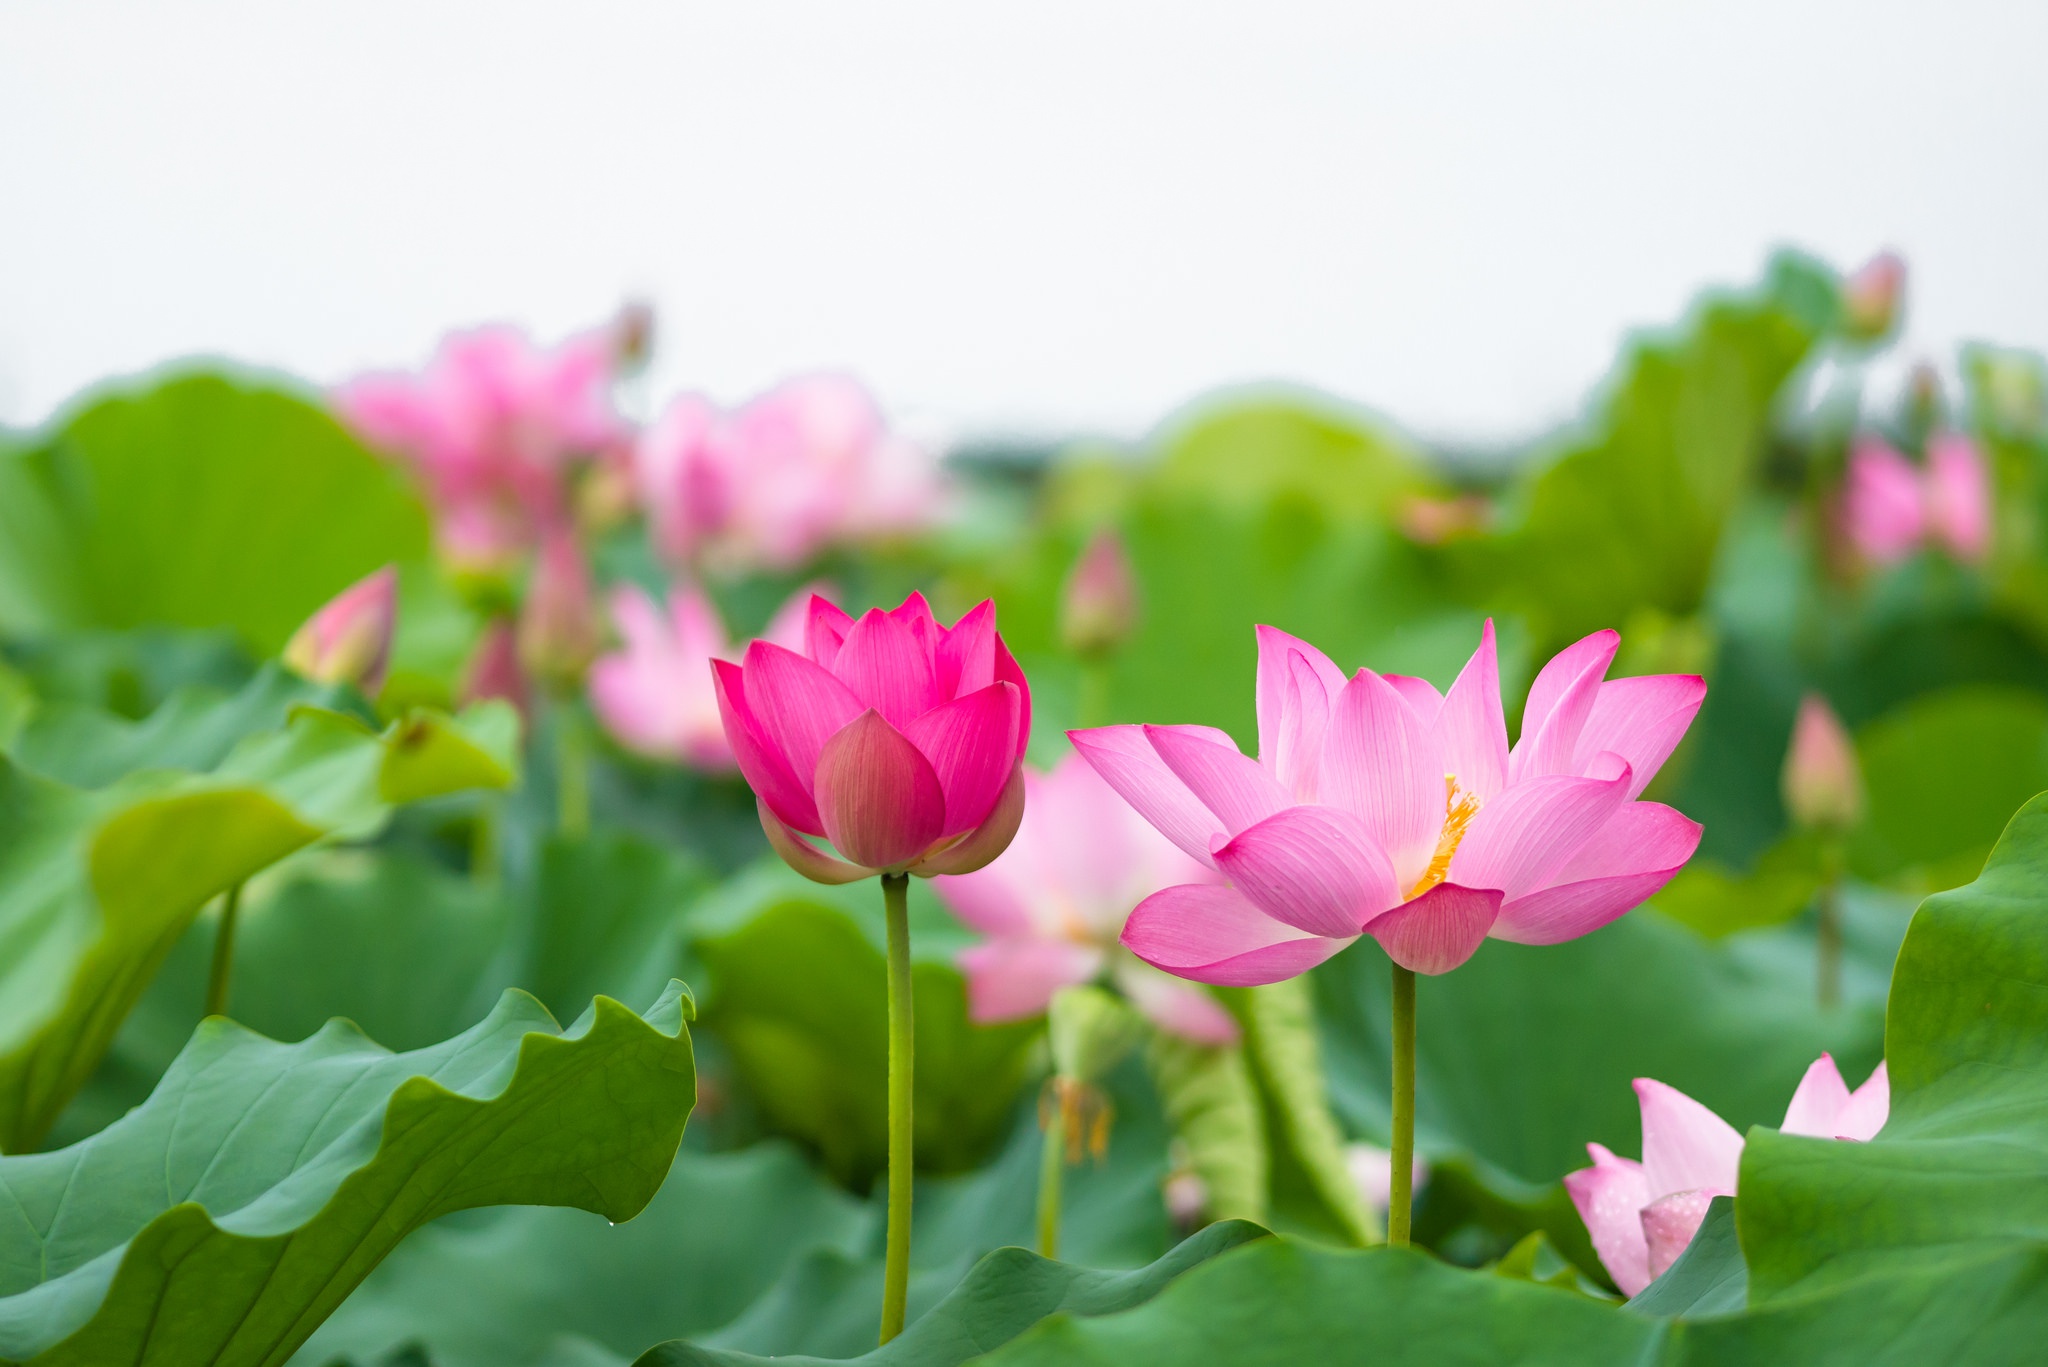 Hoa sen: Tấm ảnh về hoa sen sẽ khiến bạn cảm nhận được sự thanh tịnh, tinh khiết của nó. Bạn sẽ được đắm chìm trong không gian yên bình, dịu êm với loài hoa thân thuộc với văn hóa Việt Nam.